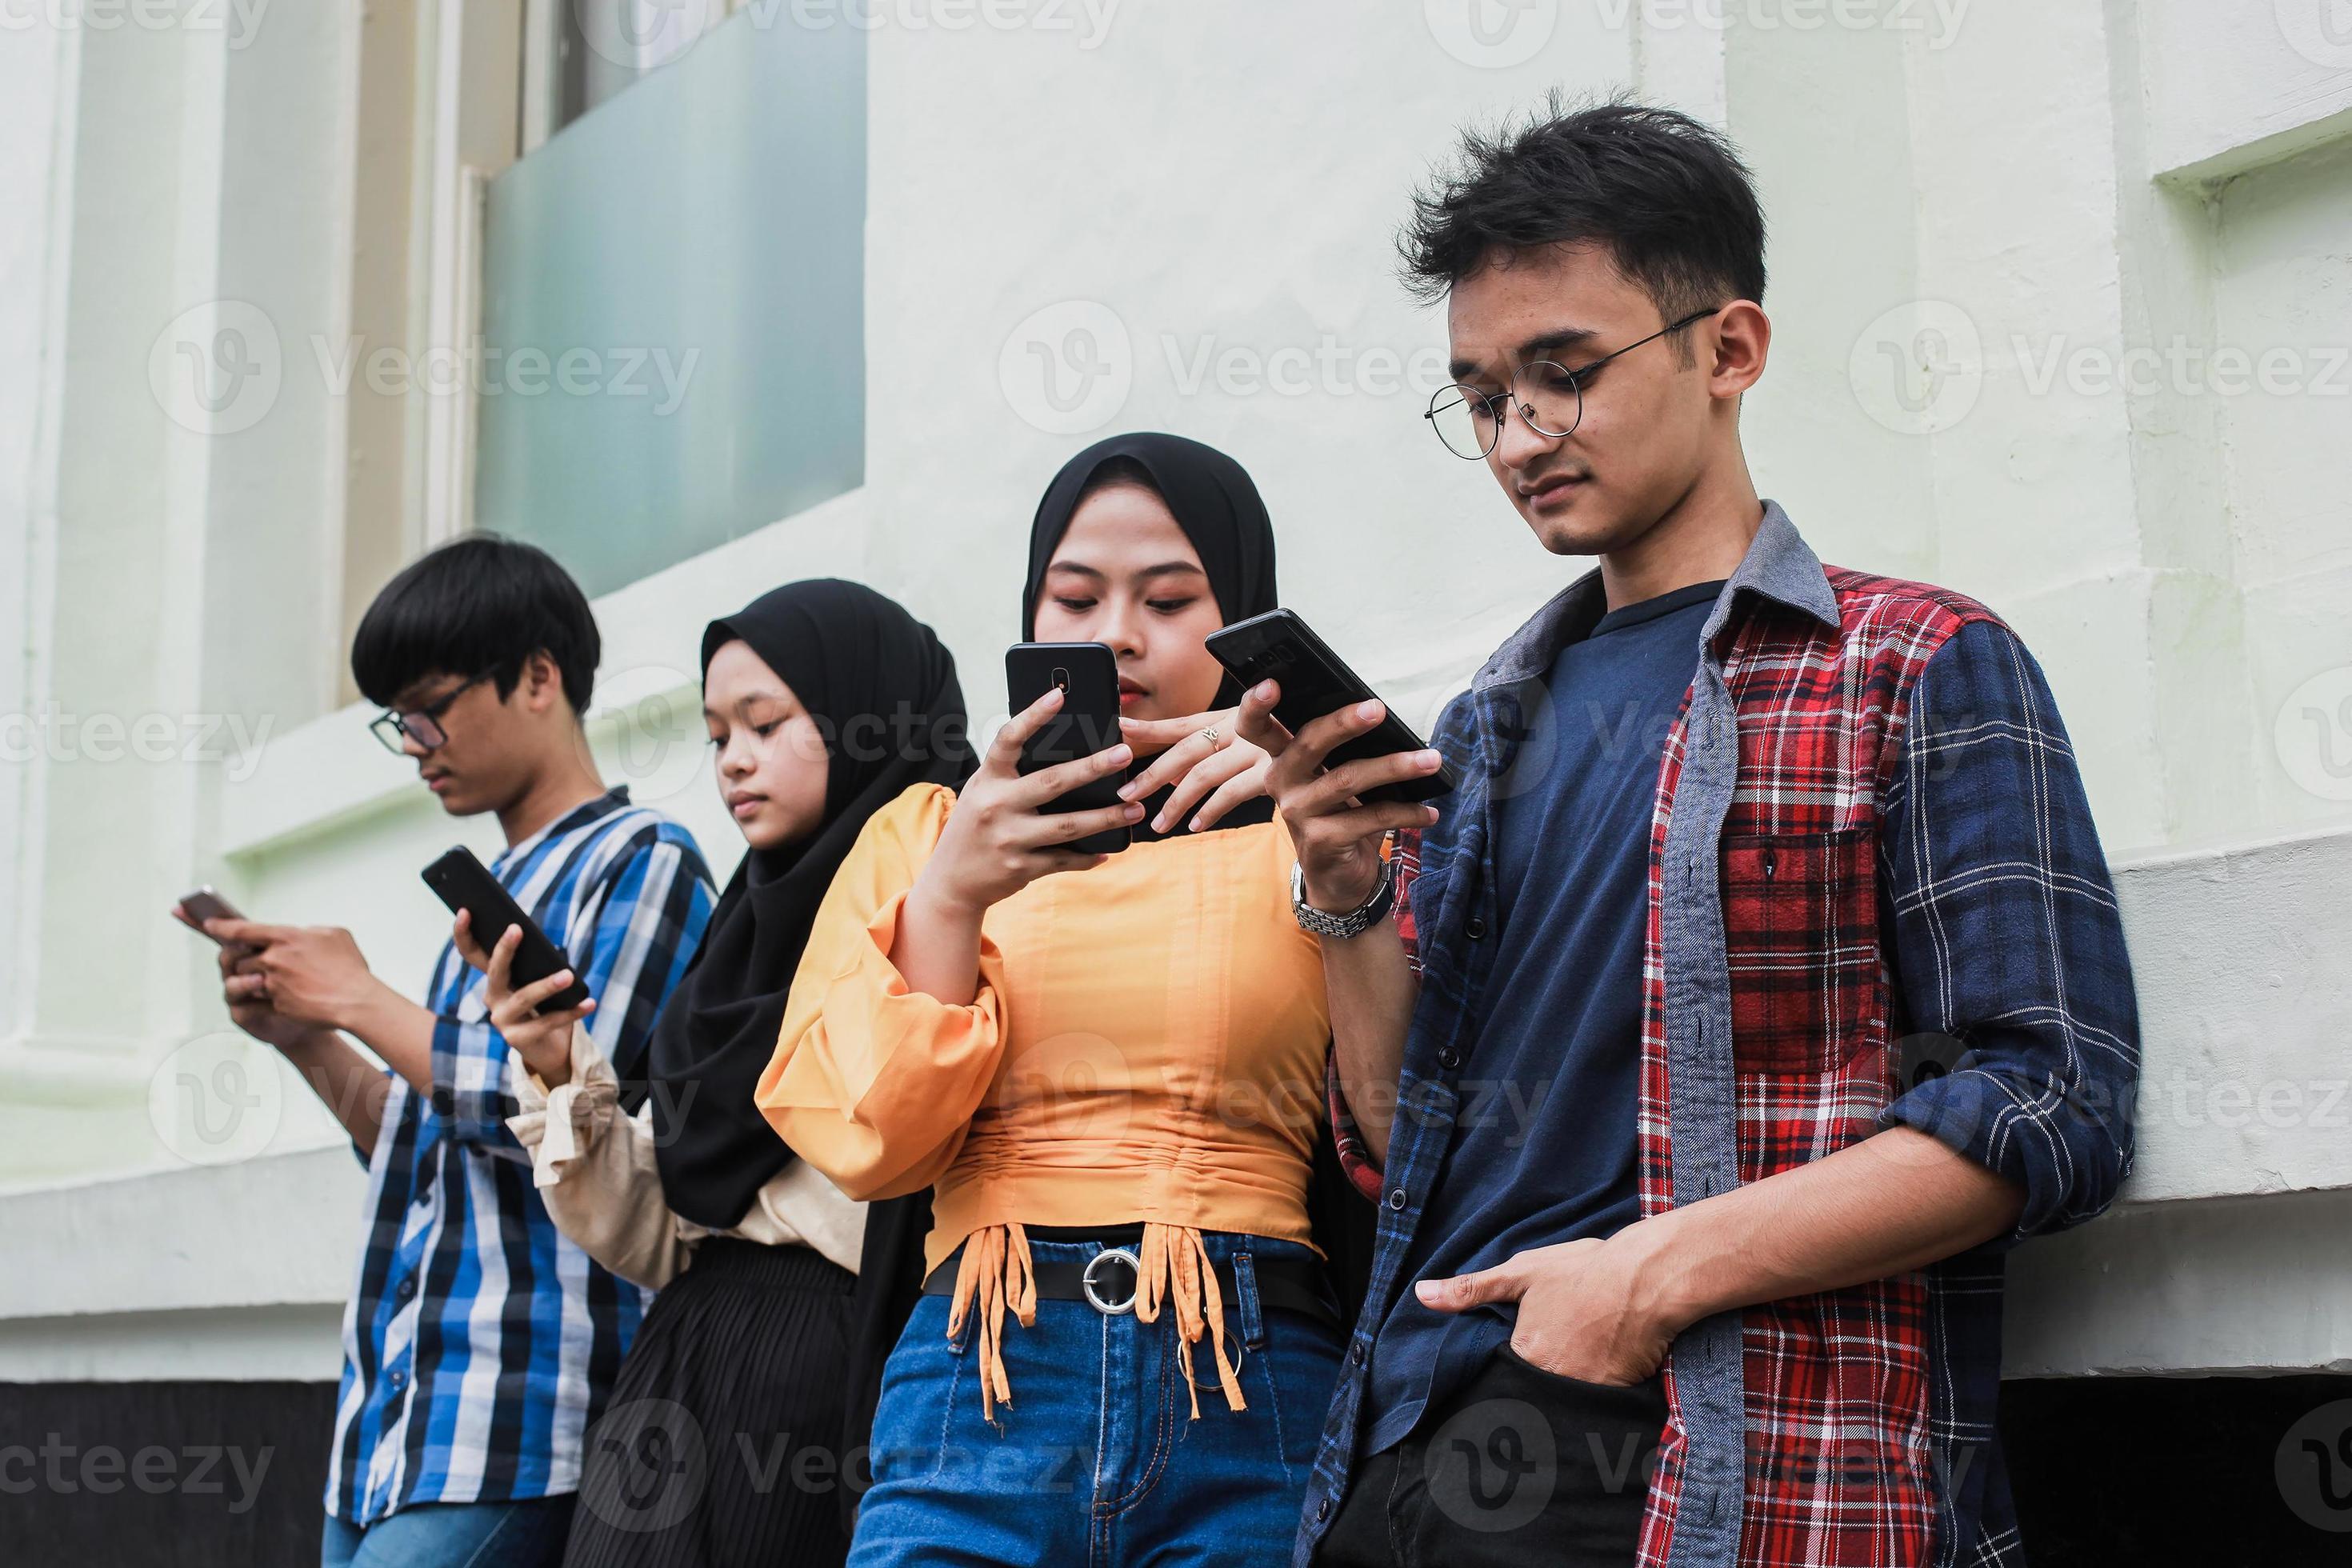 gruppo di amici che guardano telefoni cellulari intelligenti - dipendenza degli adolescenti dalle nuove tendenze tecnologiche - concetto di gioventù, tecnologia, sociale e amicizia foto